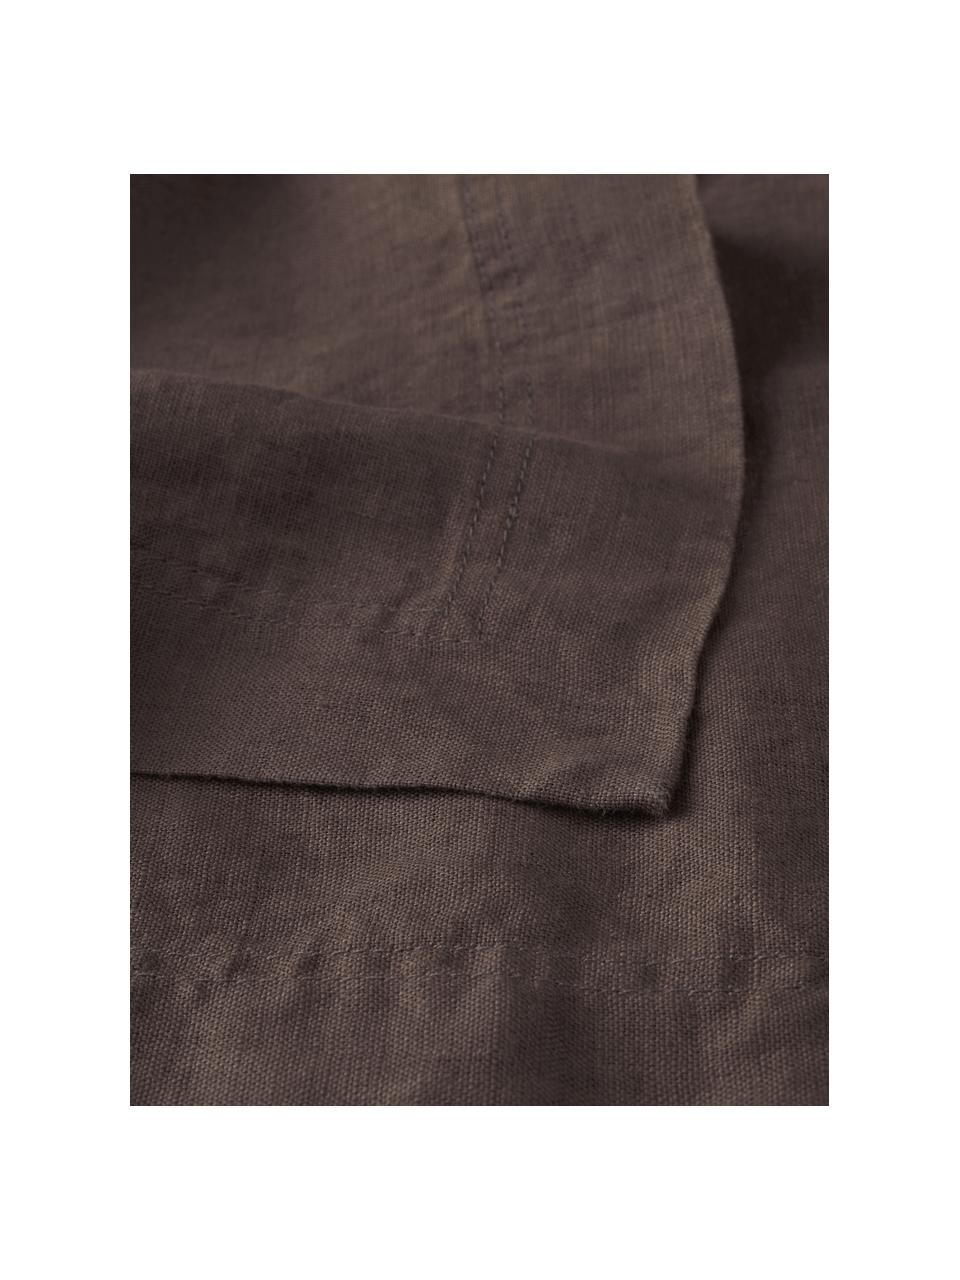 Tovaglia in lino nero Duk, 100% lino, Marrone scuro, Per 6 - 10 persone (Larg. 135 x Lung. 250 cm)